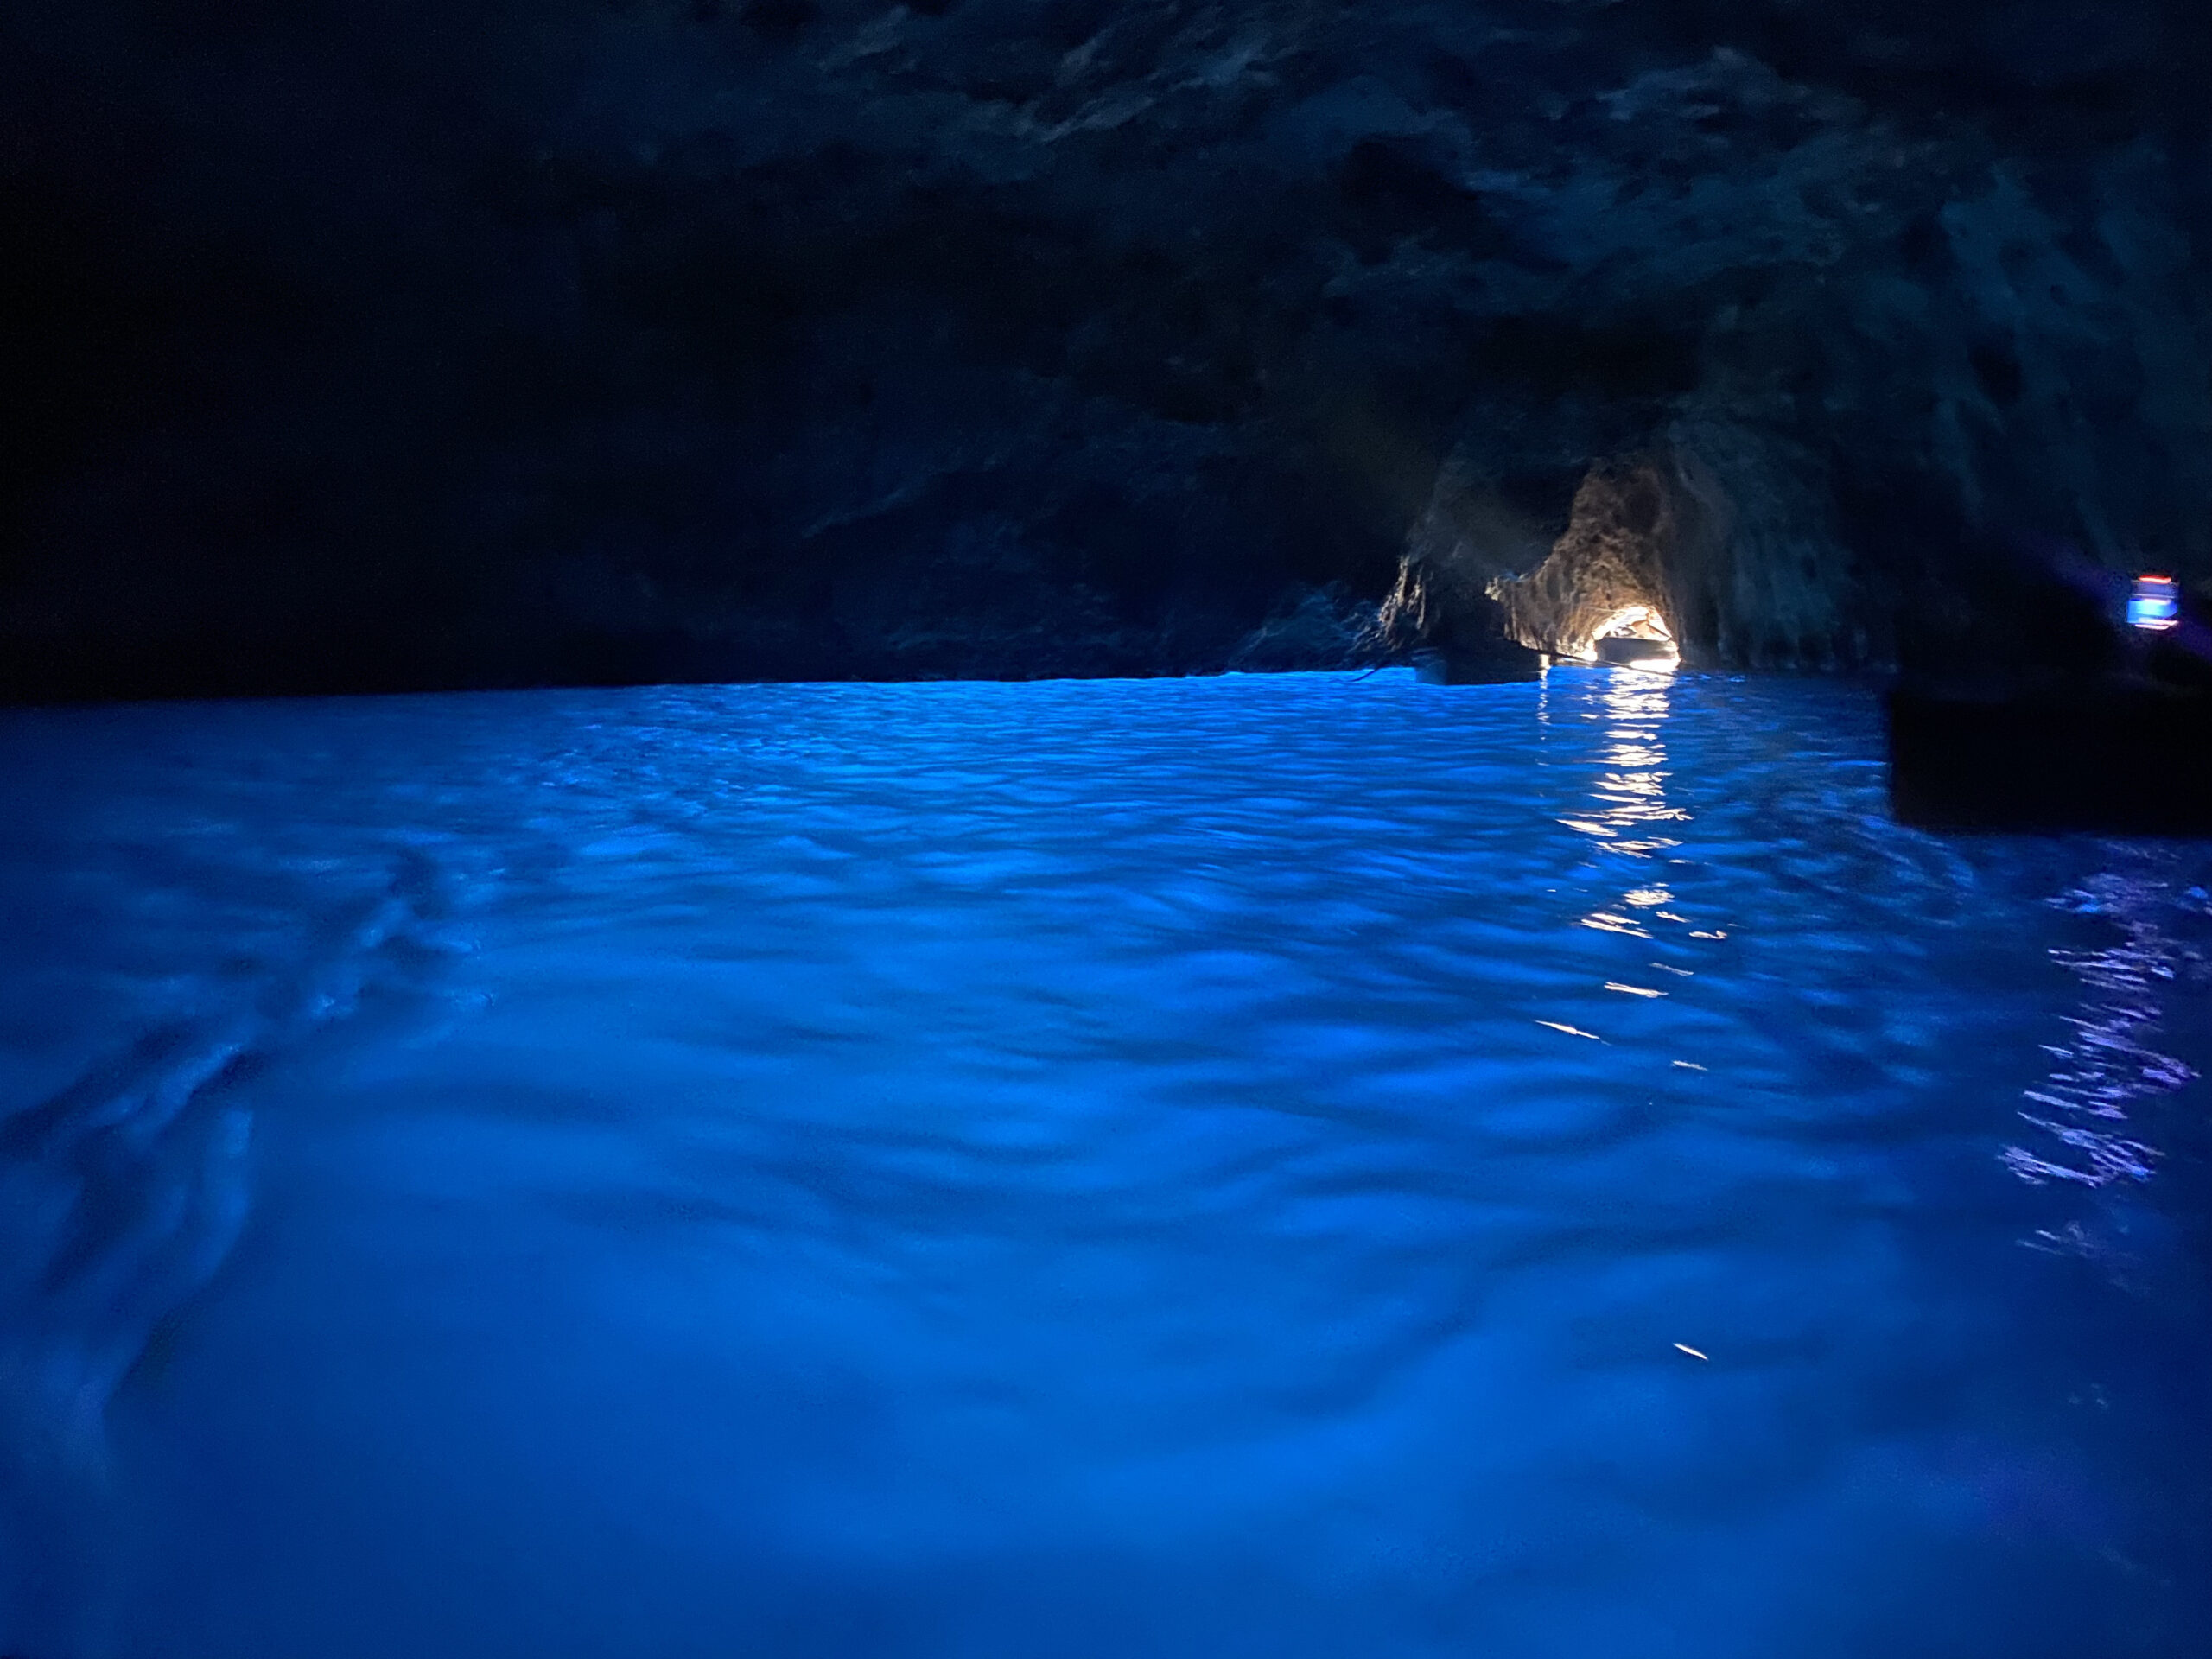 The Blue Grotto in Capri